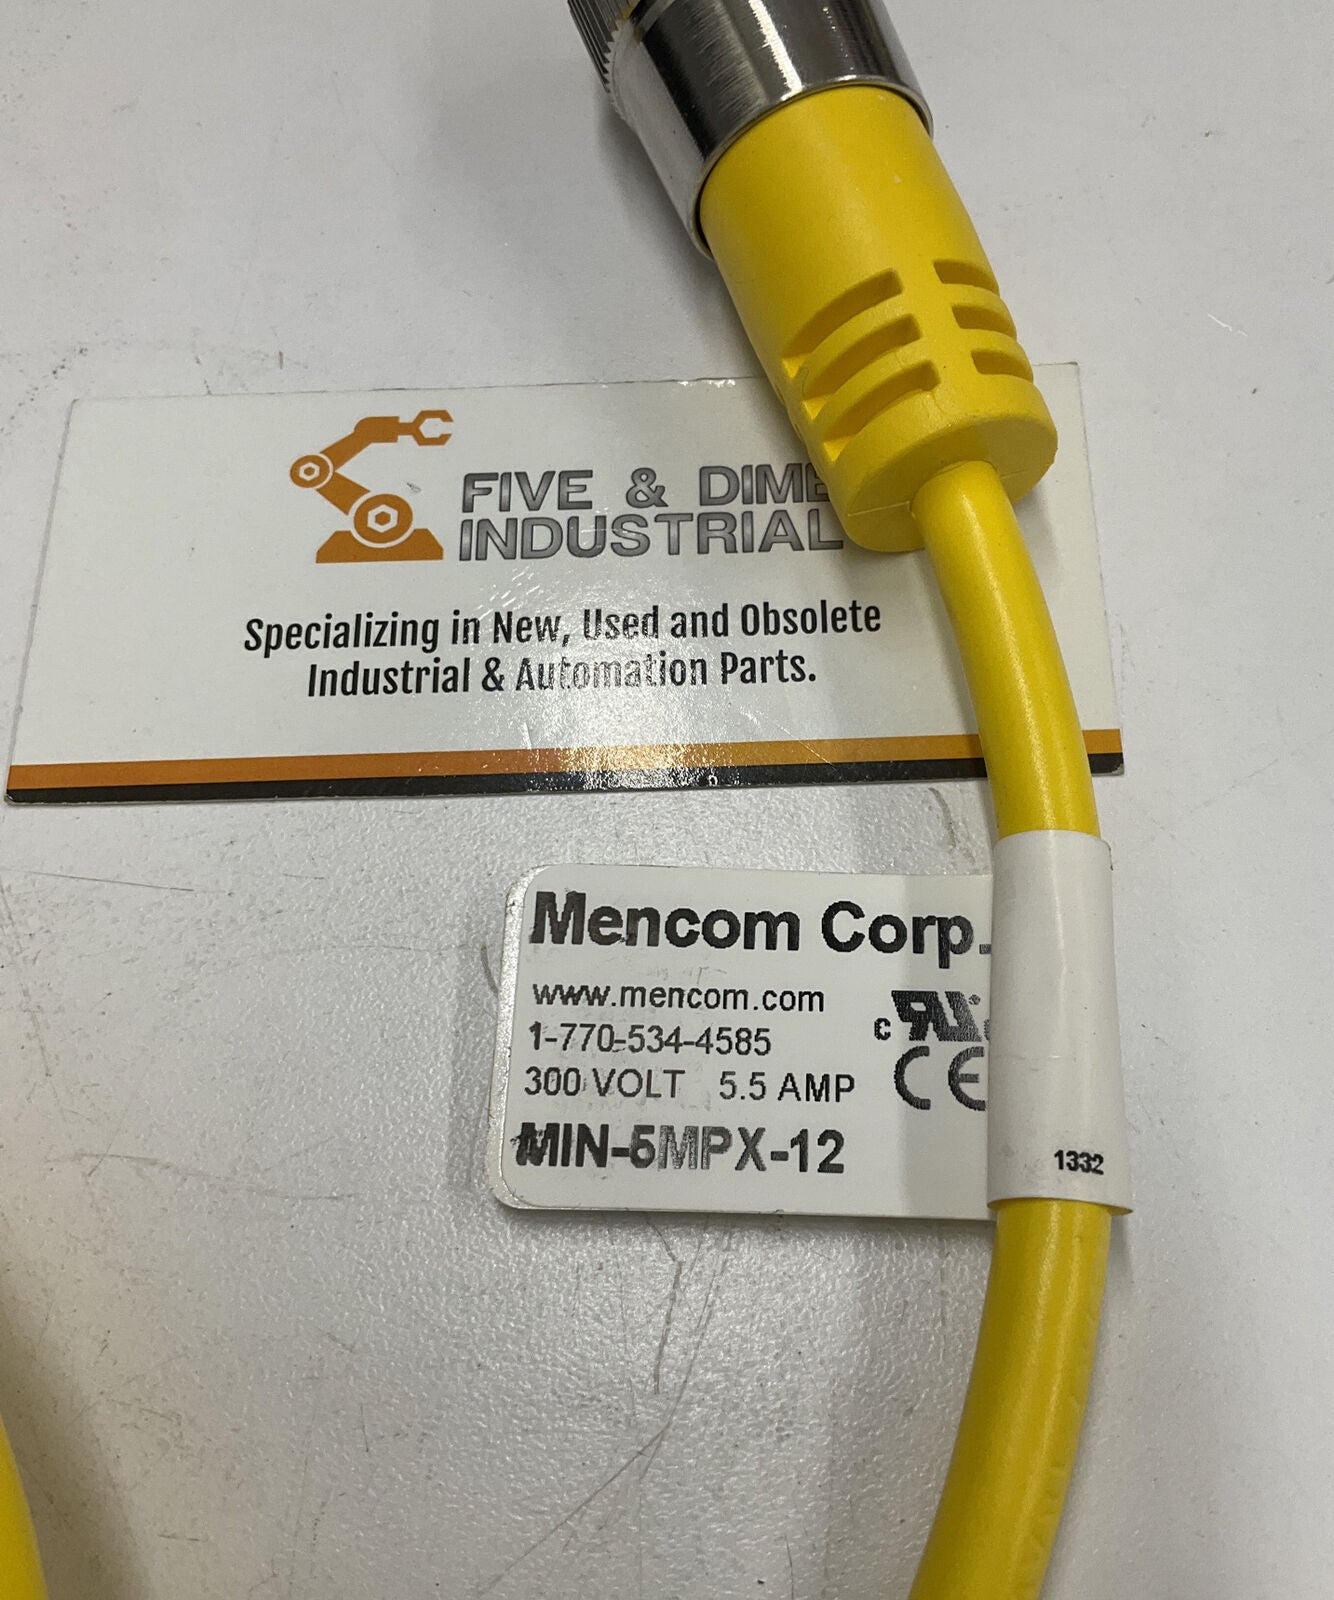 Mencom MIN-5MPX-12 New Connector Cable (CBL144)